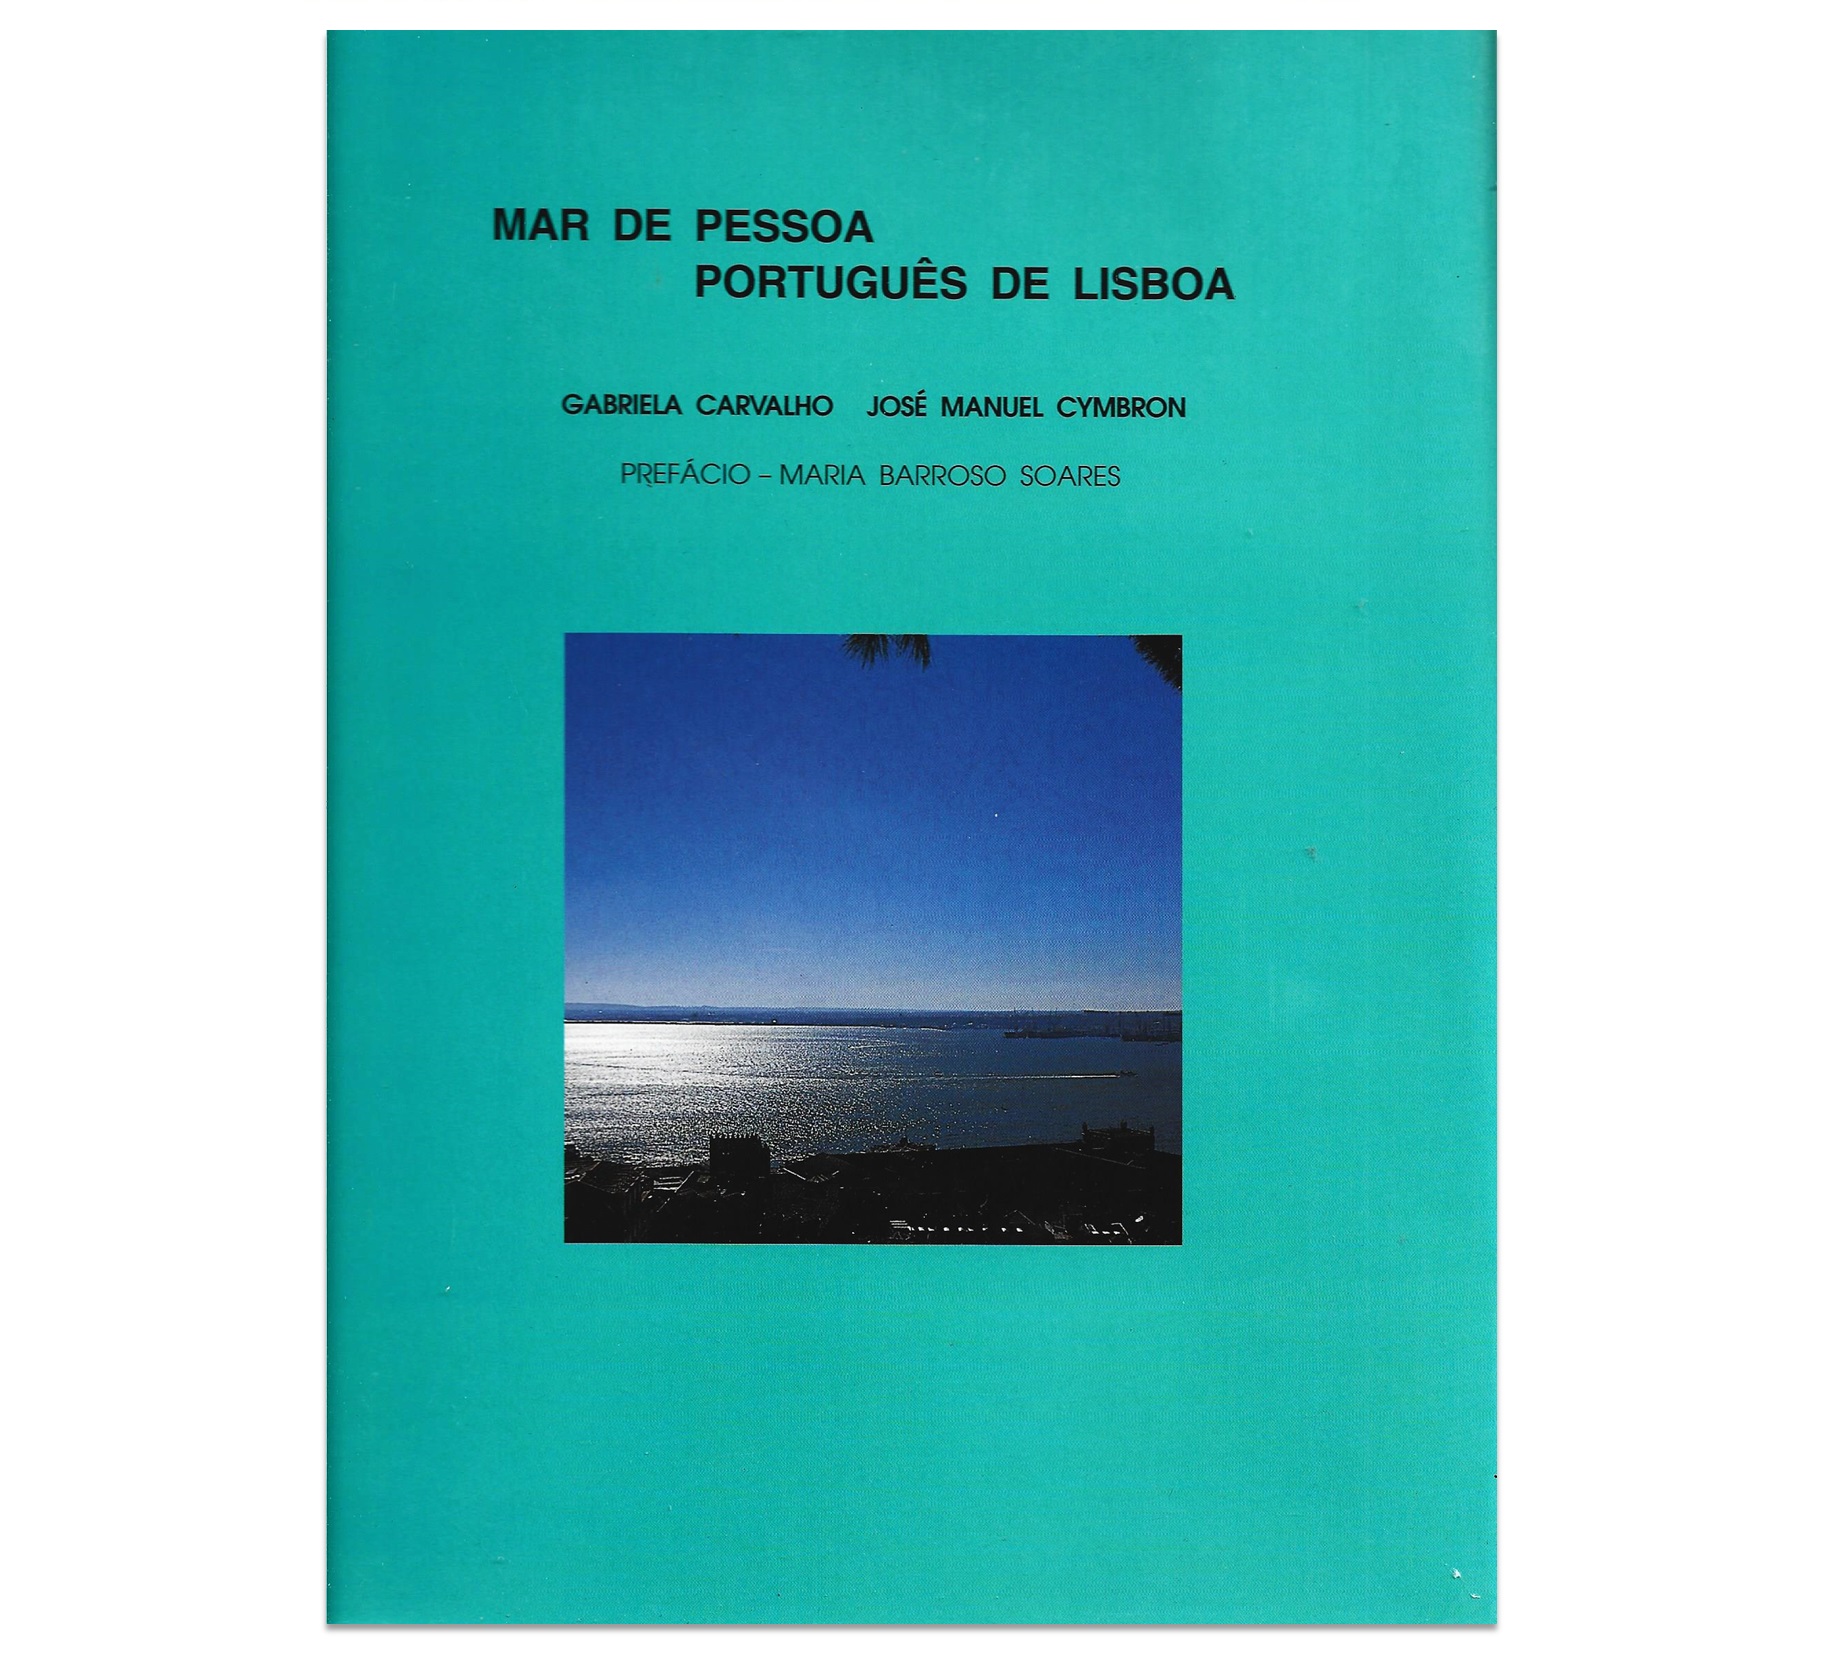  MAR DE PESSOA, PORTUGUÊS DE LISBOA